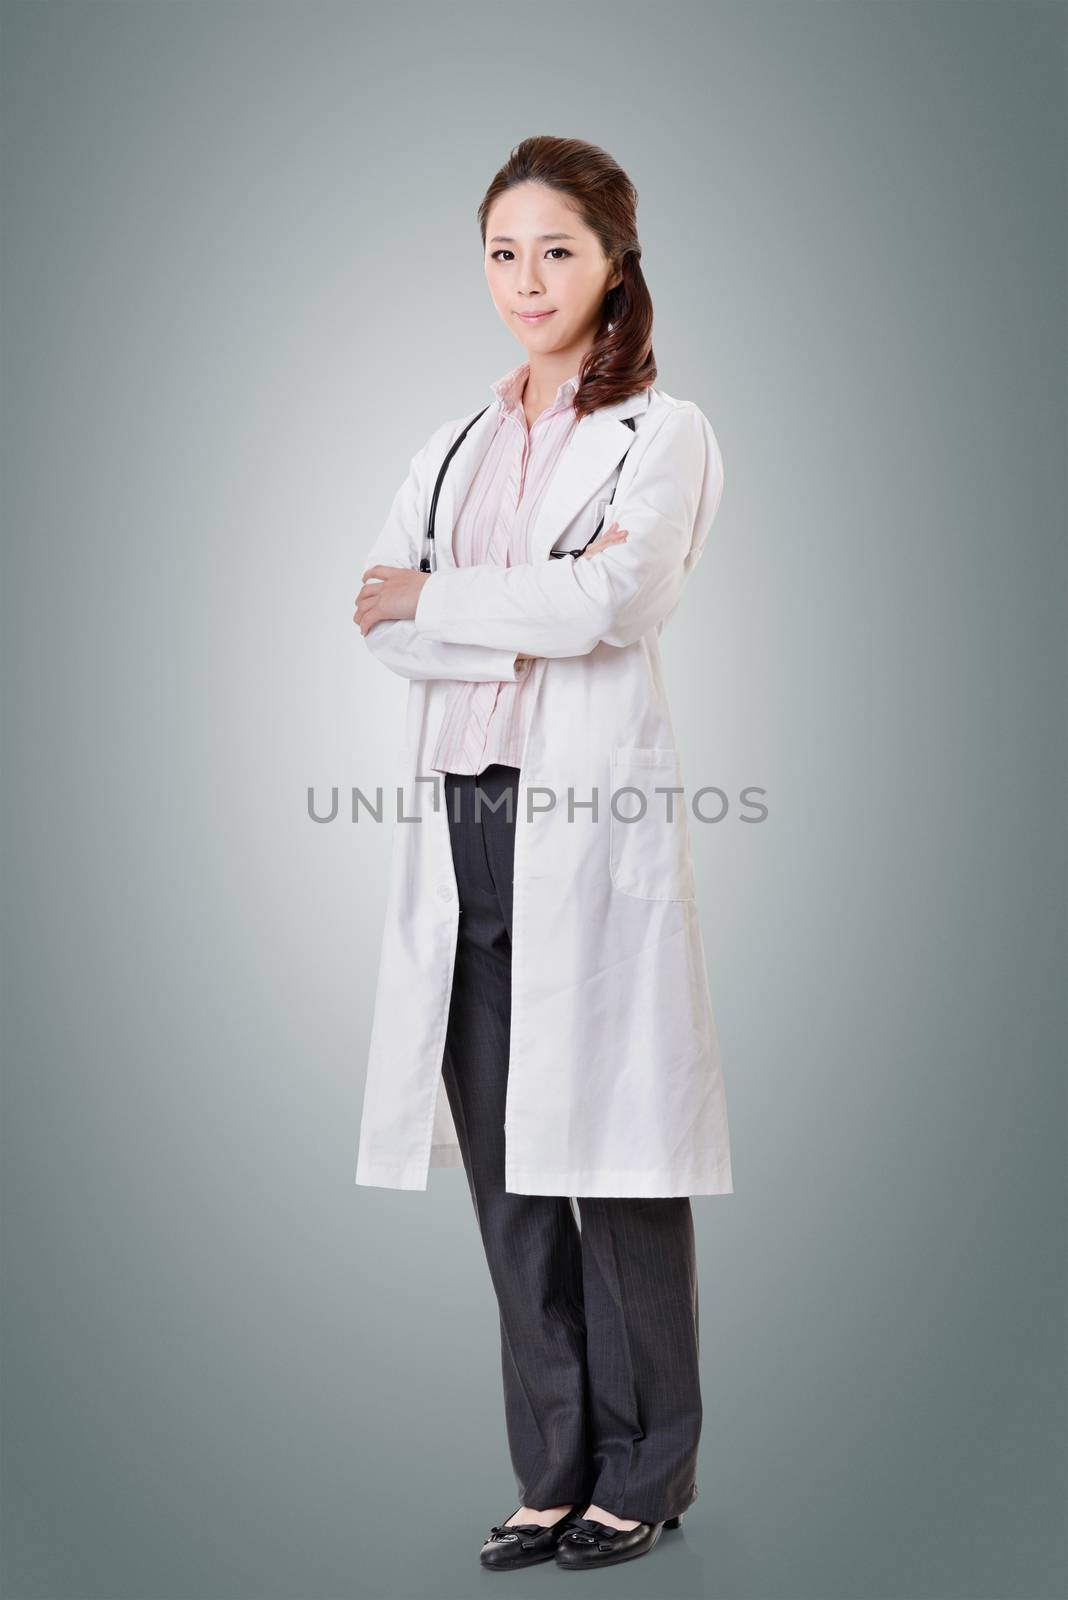 Friendly Asian doctor by elwynn